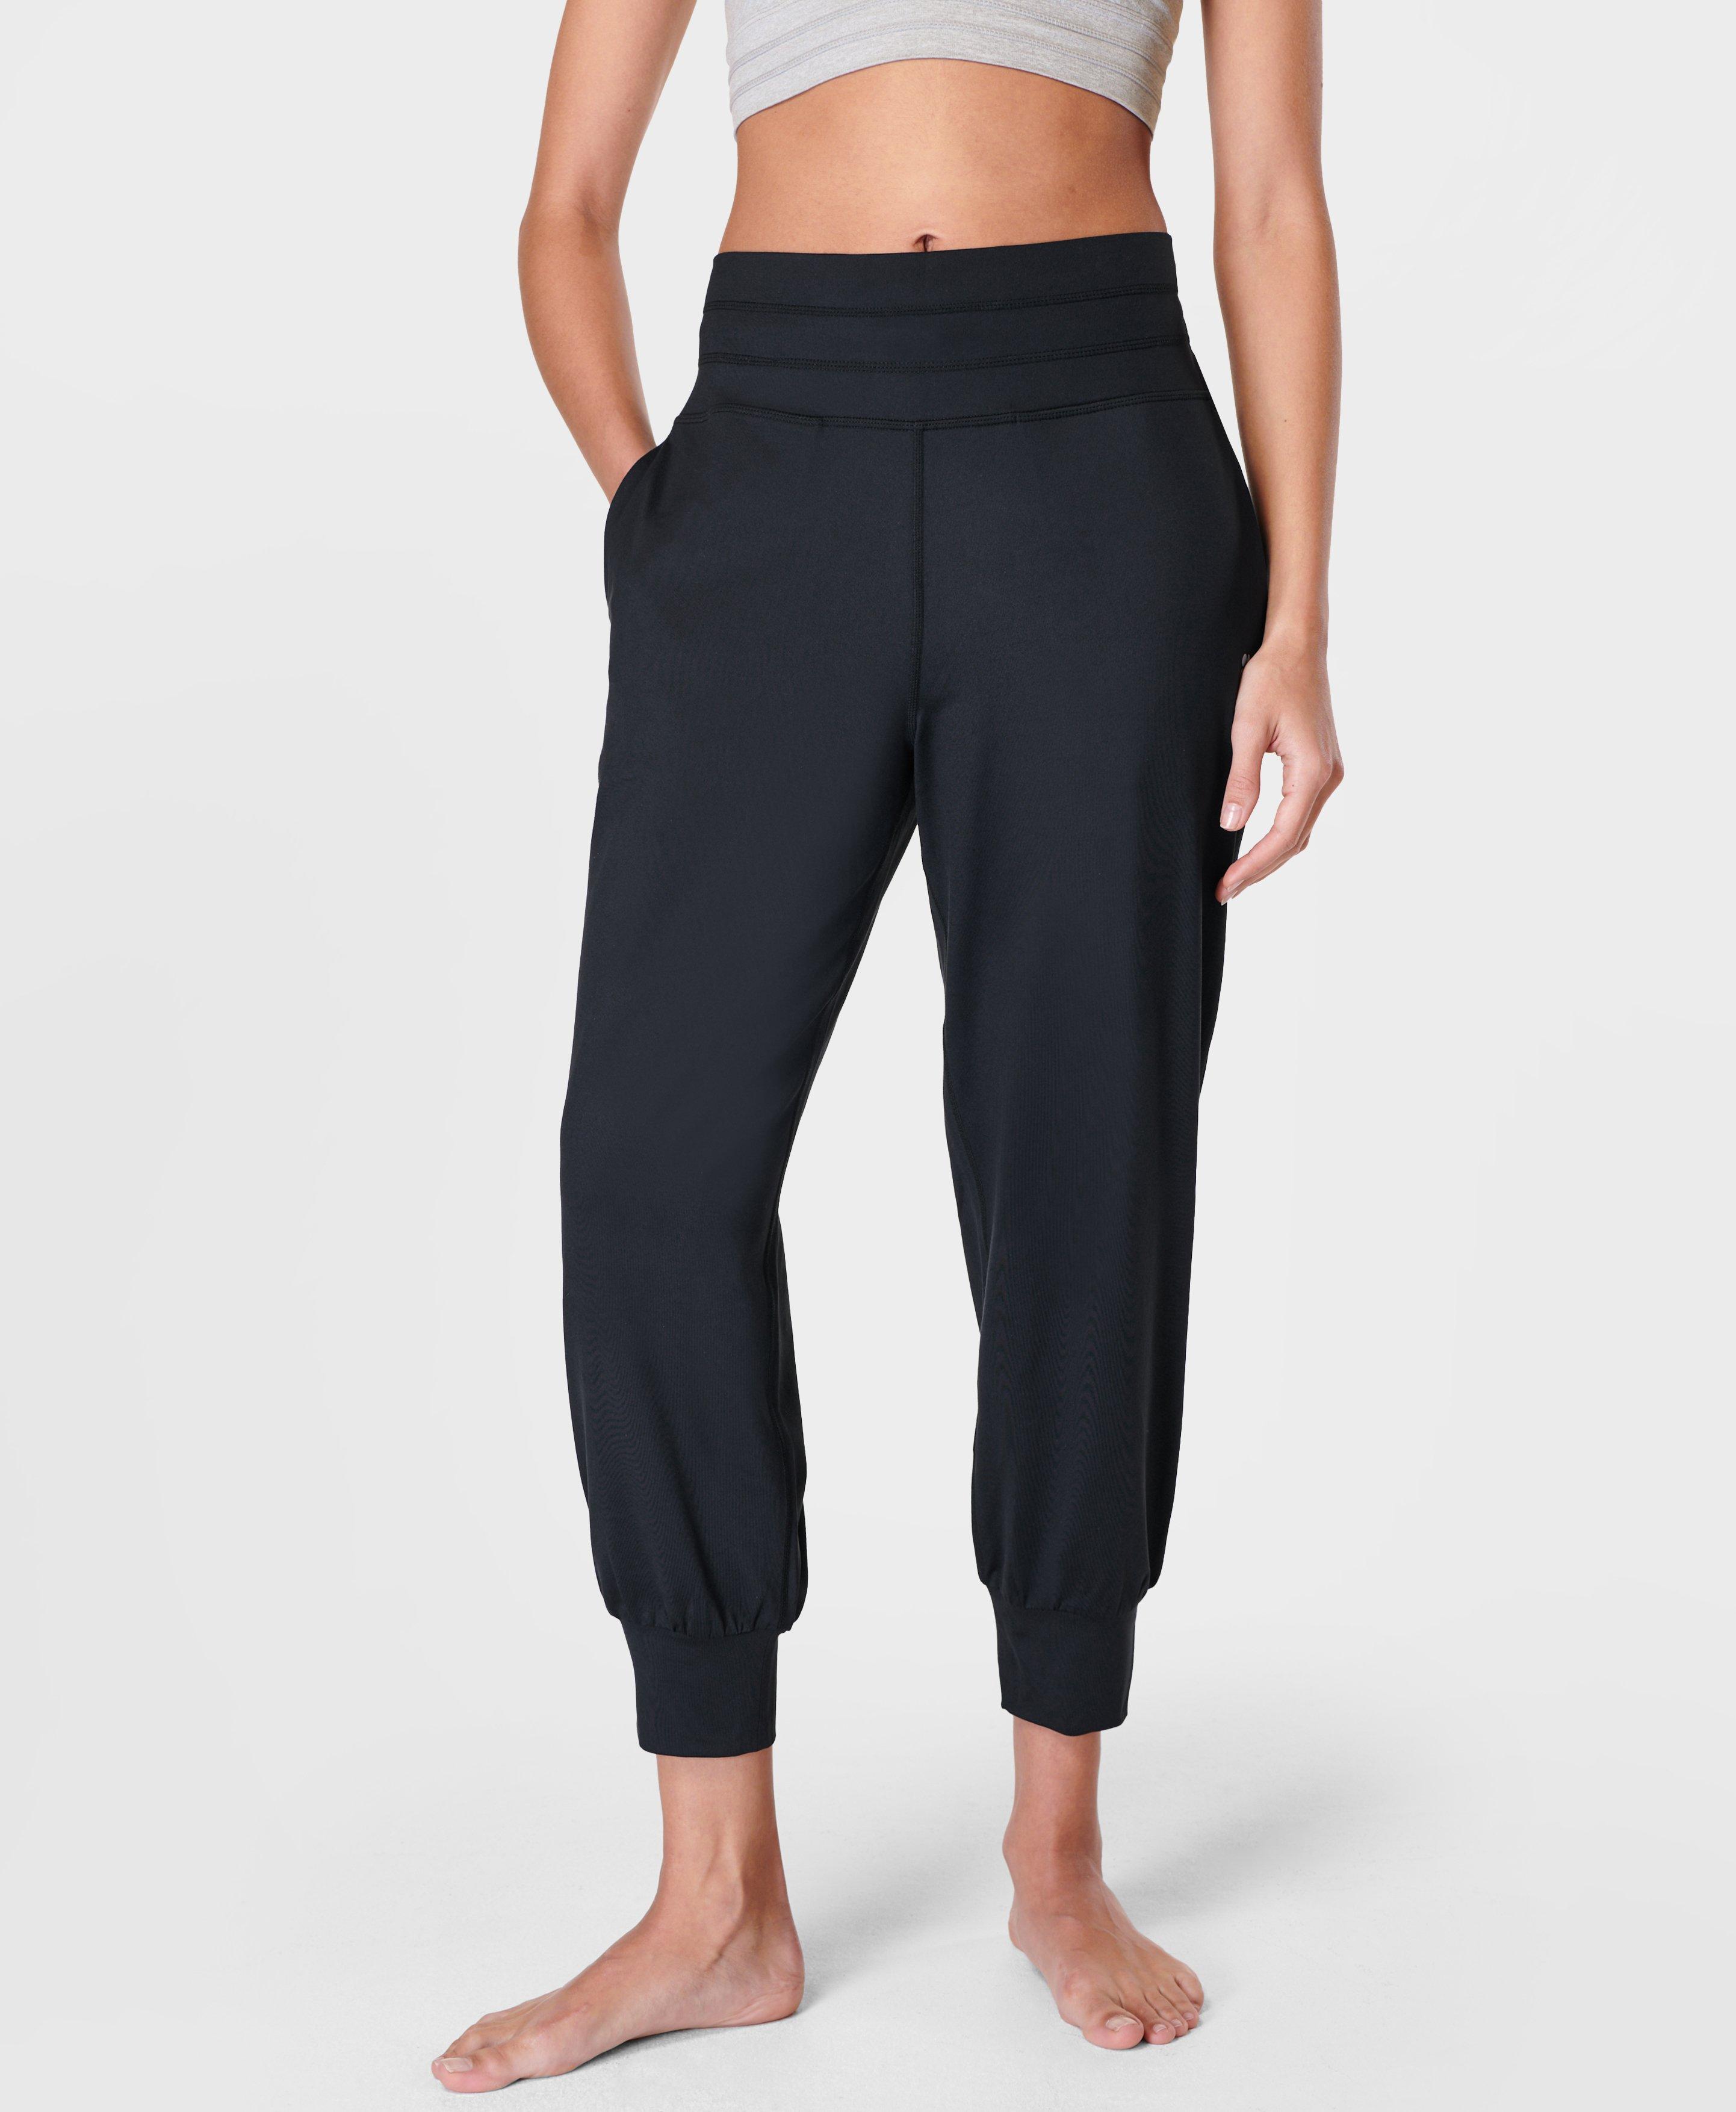 3/$20 🎉 GAIAM yoga pants/ activewear leggings, cropped capri